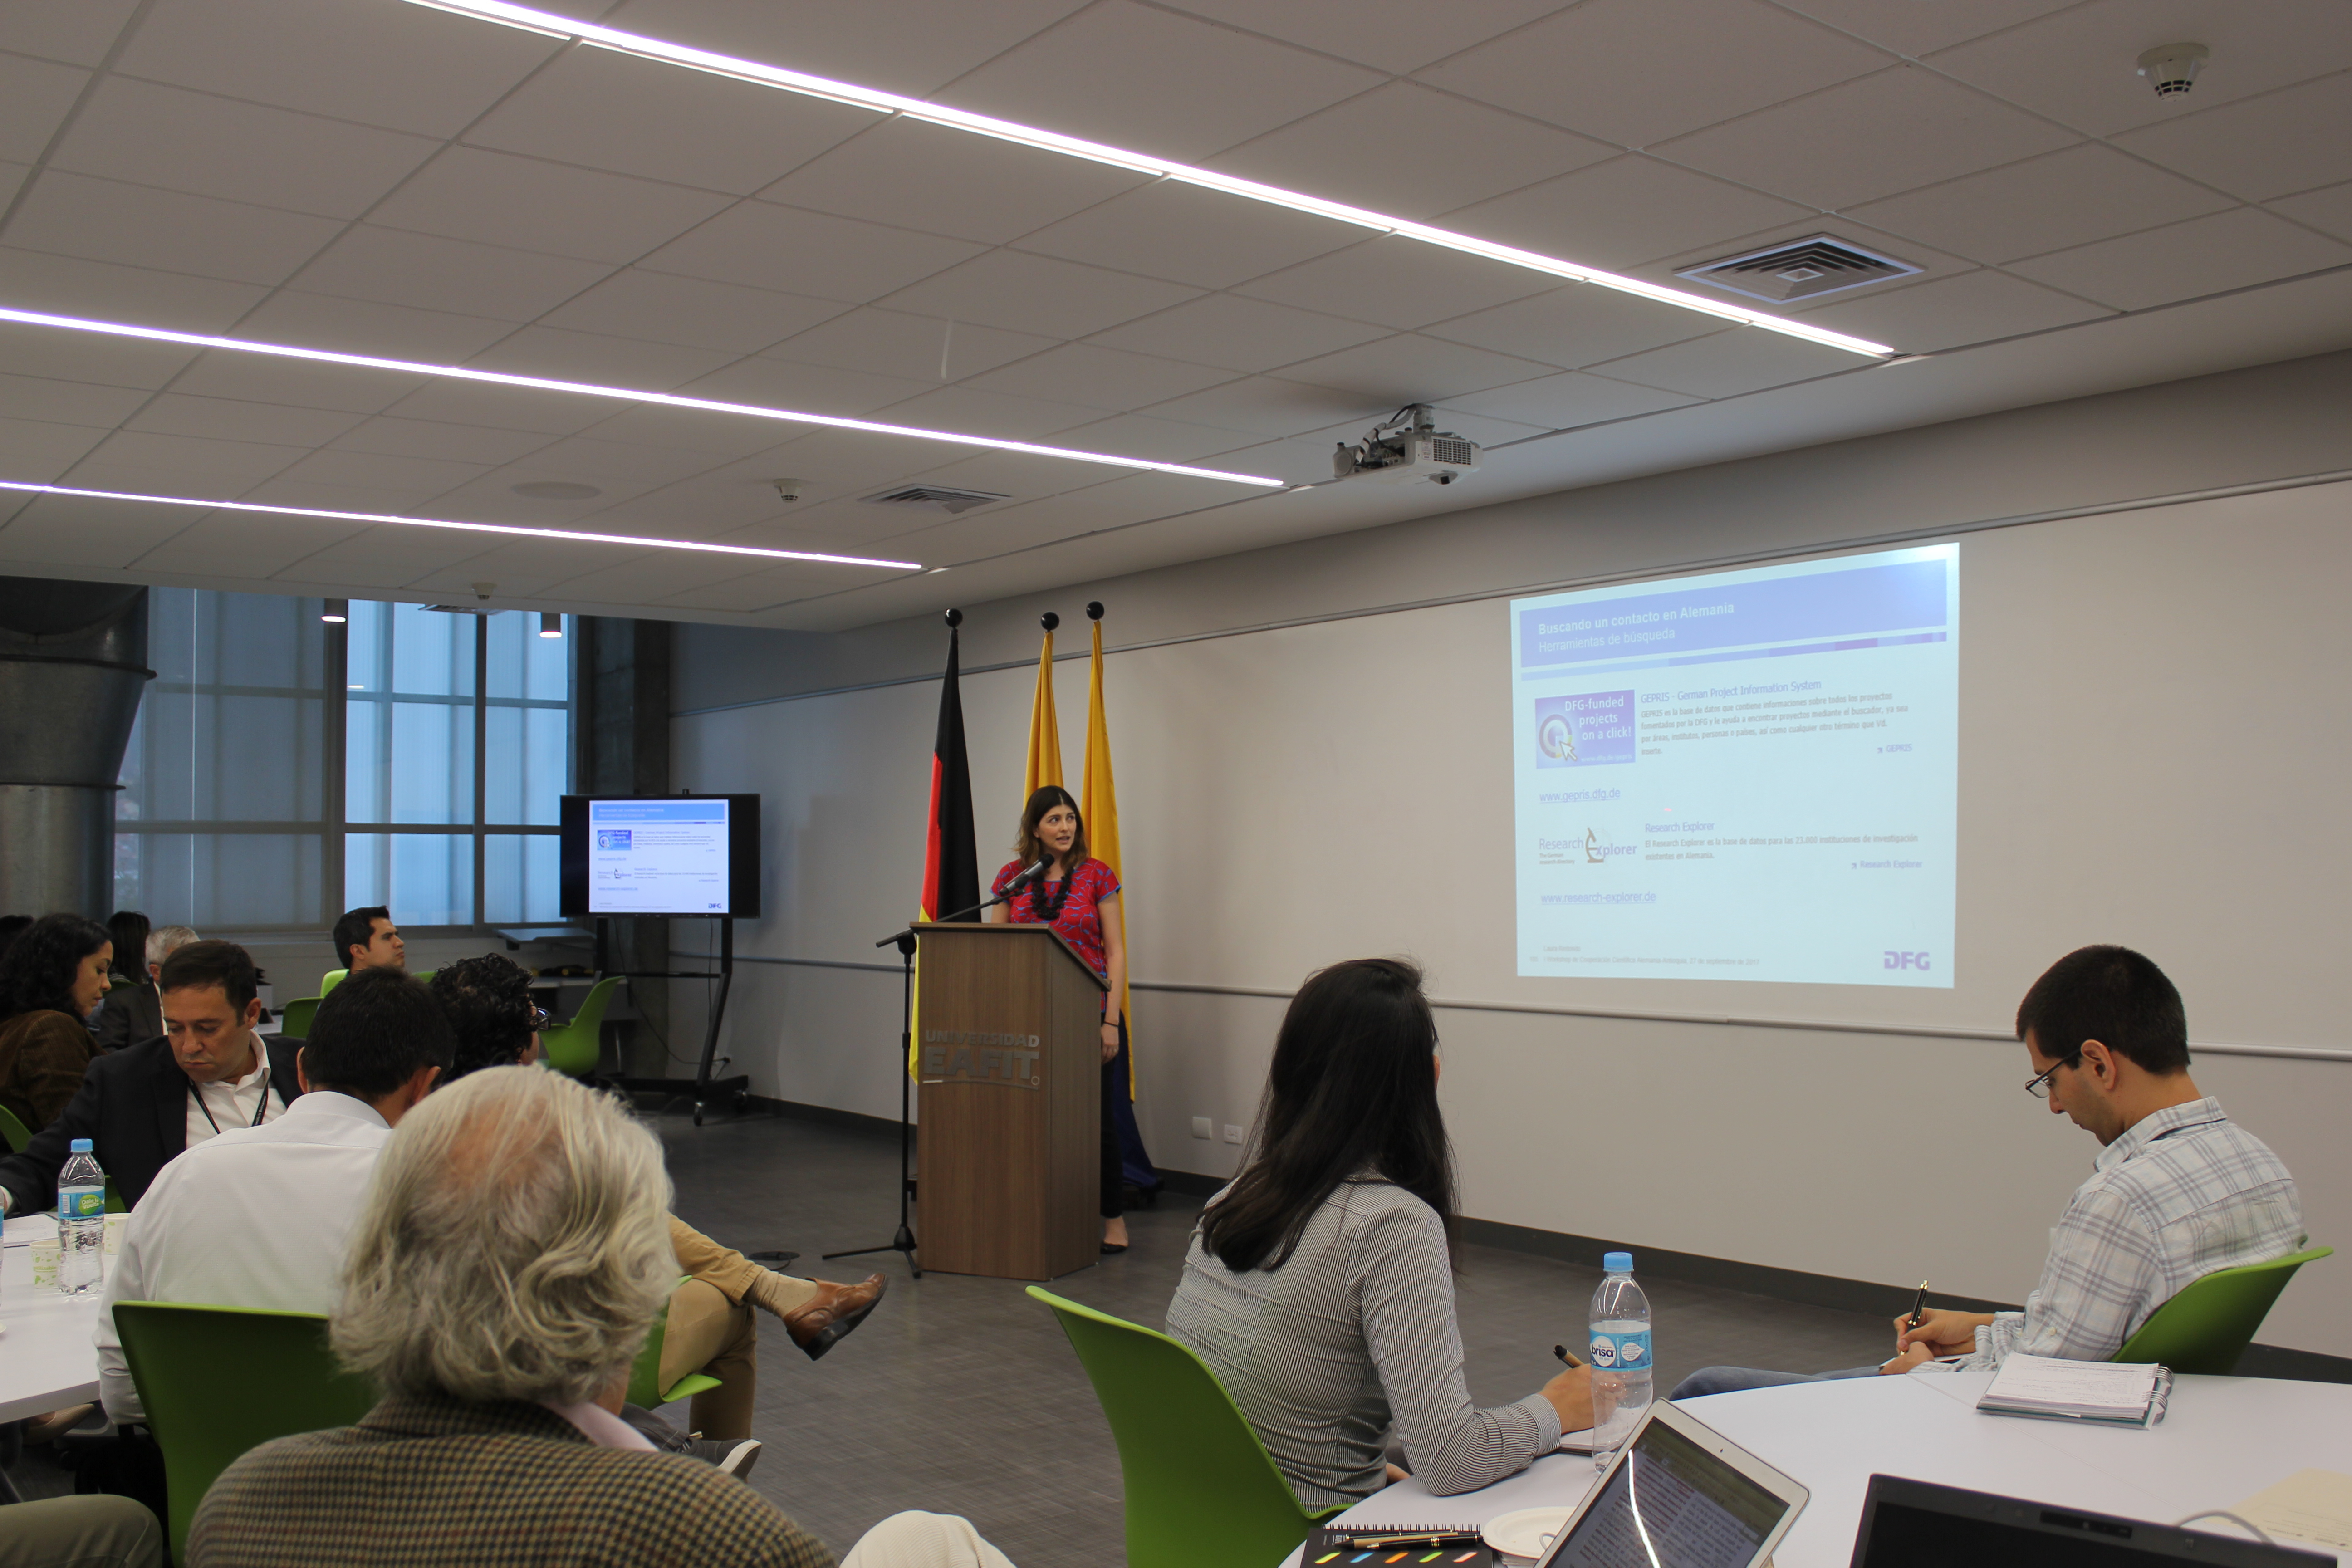 Laura Redondo stellte das DFG-Büro Lateinamerika und dessen Aktivitäten in der Region vor